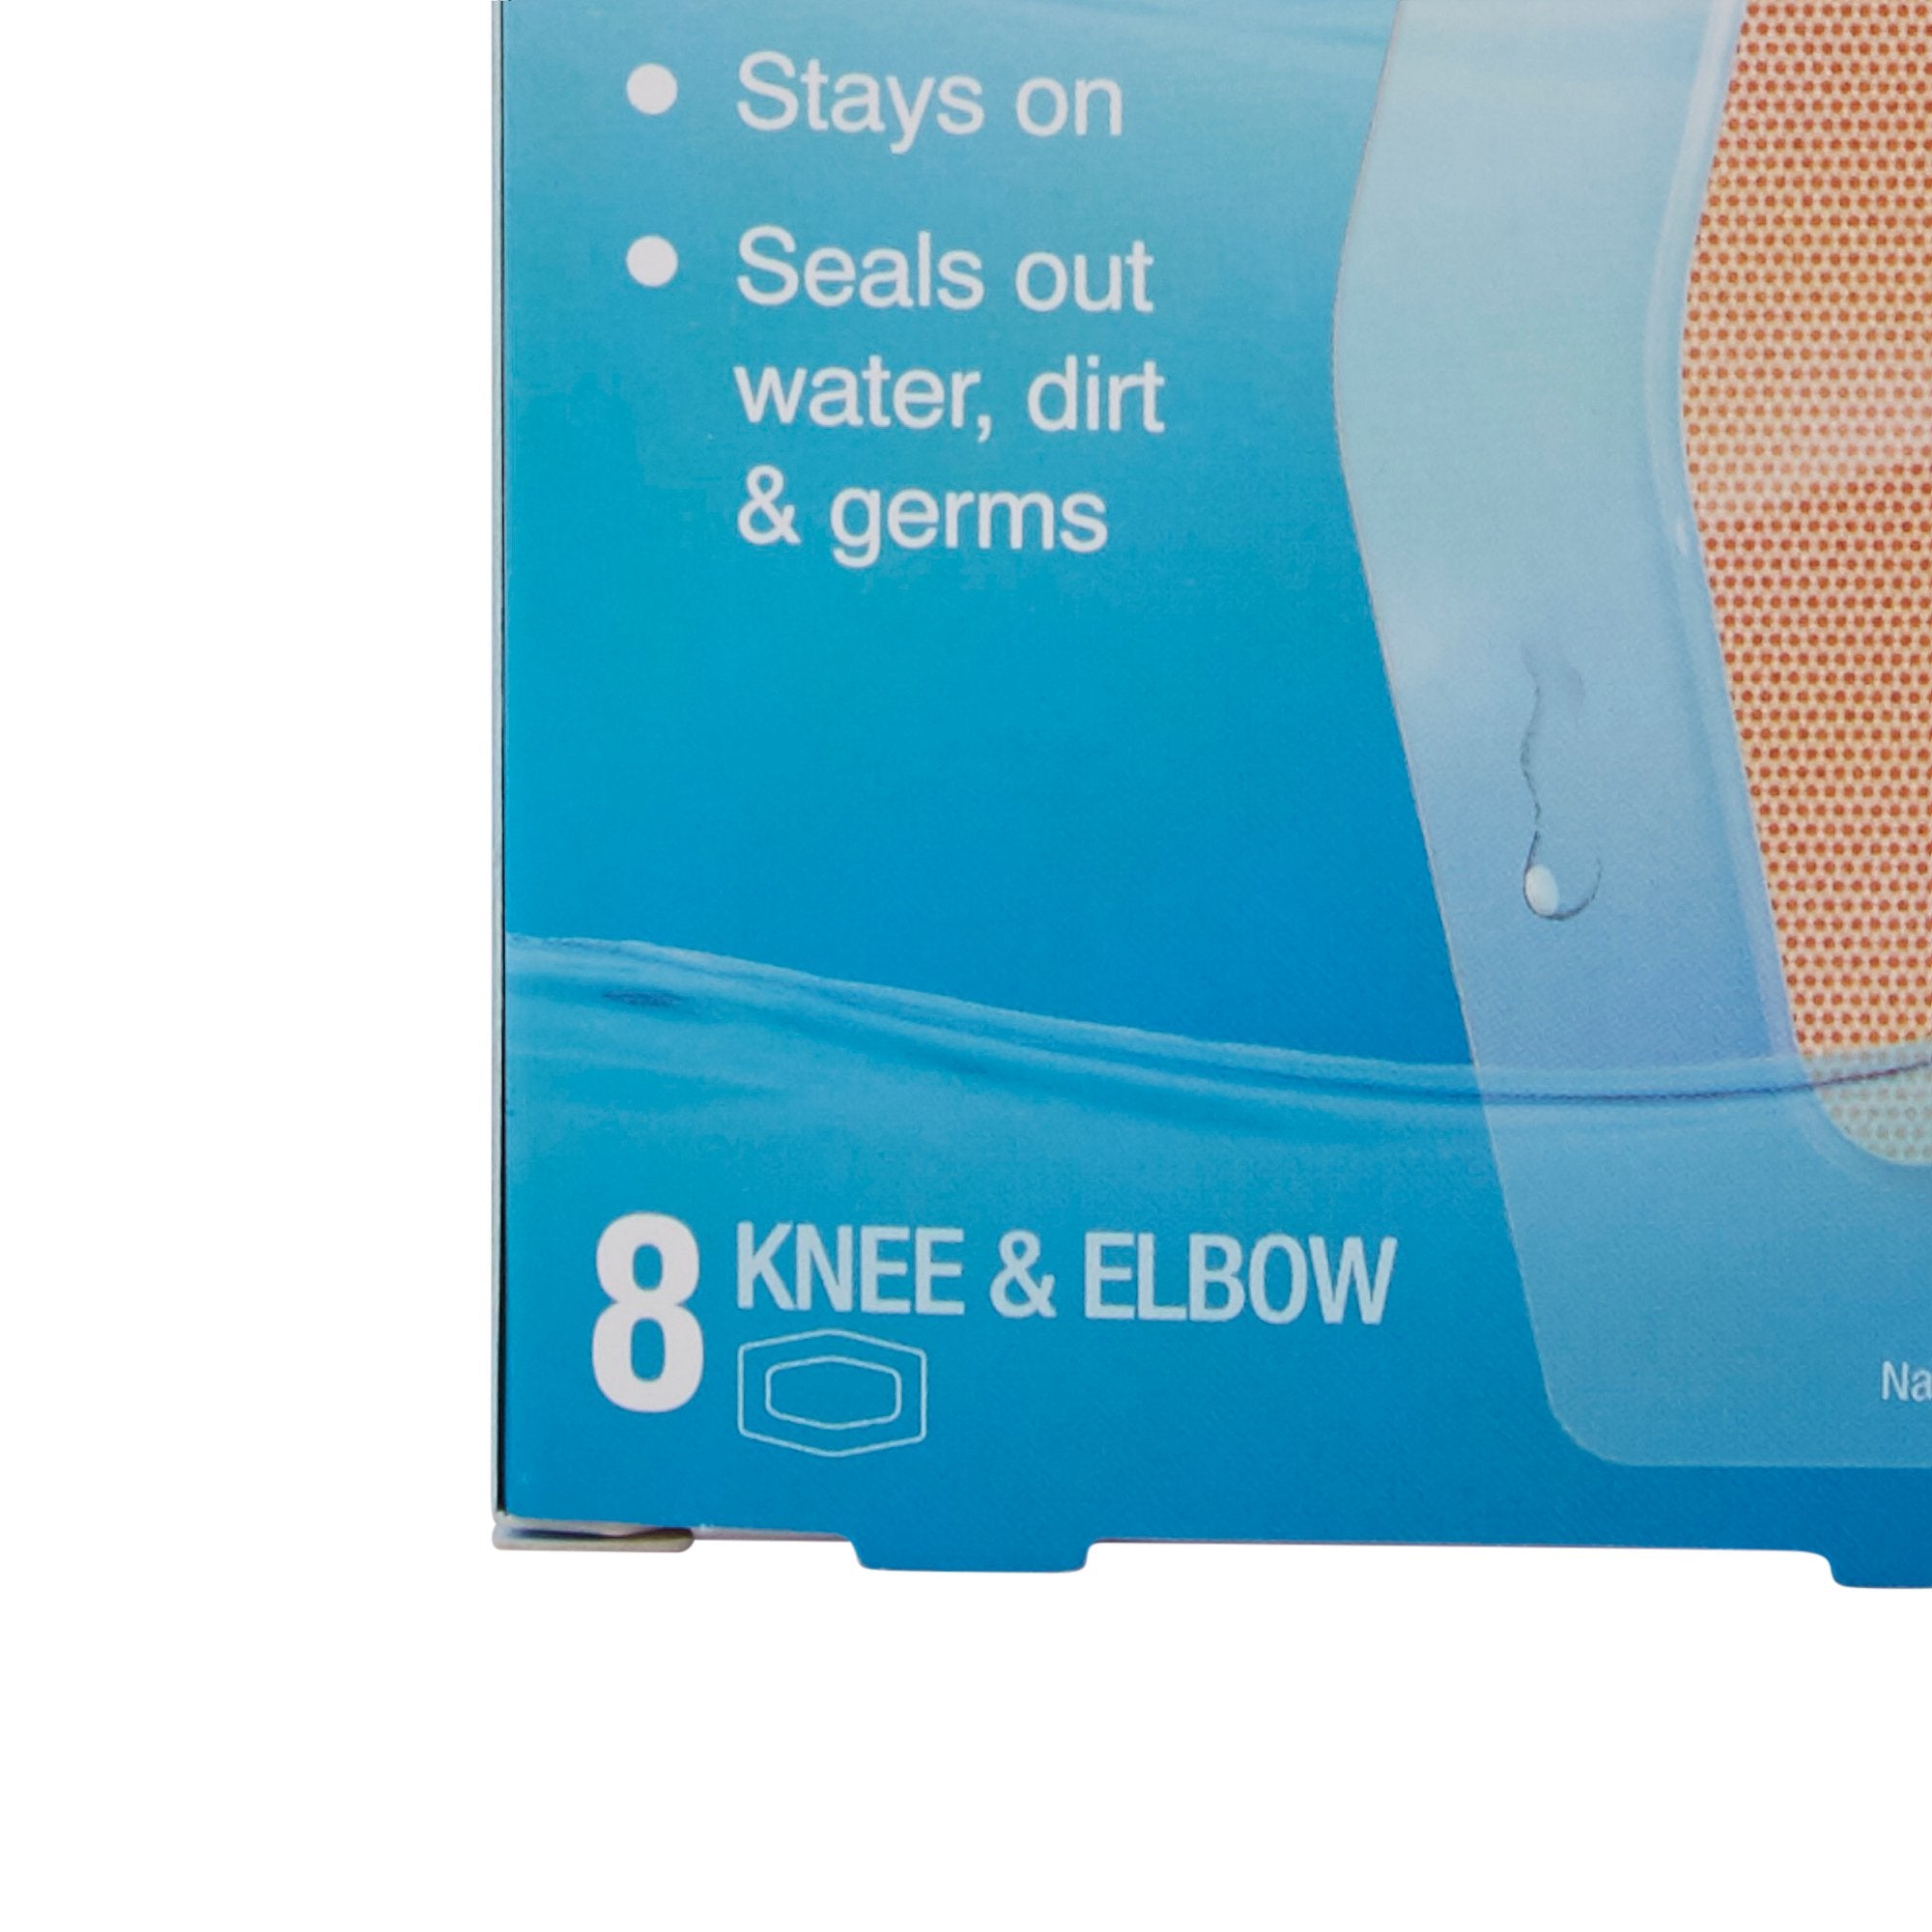 Adhesive Strip Nexcare Waterproof 2-3/8 X 3 Inch Plastic Knee / Elbow Sheer Sterile